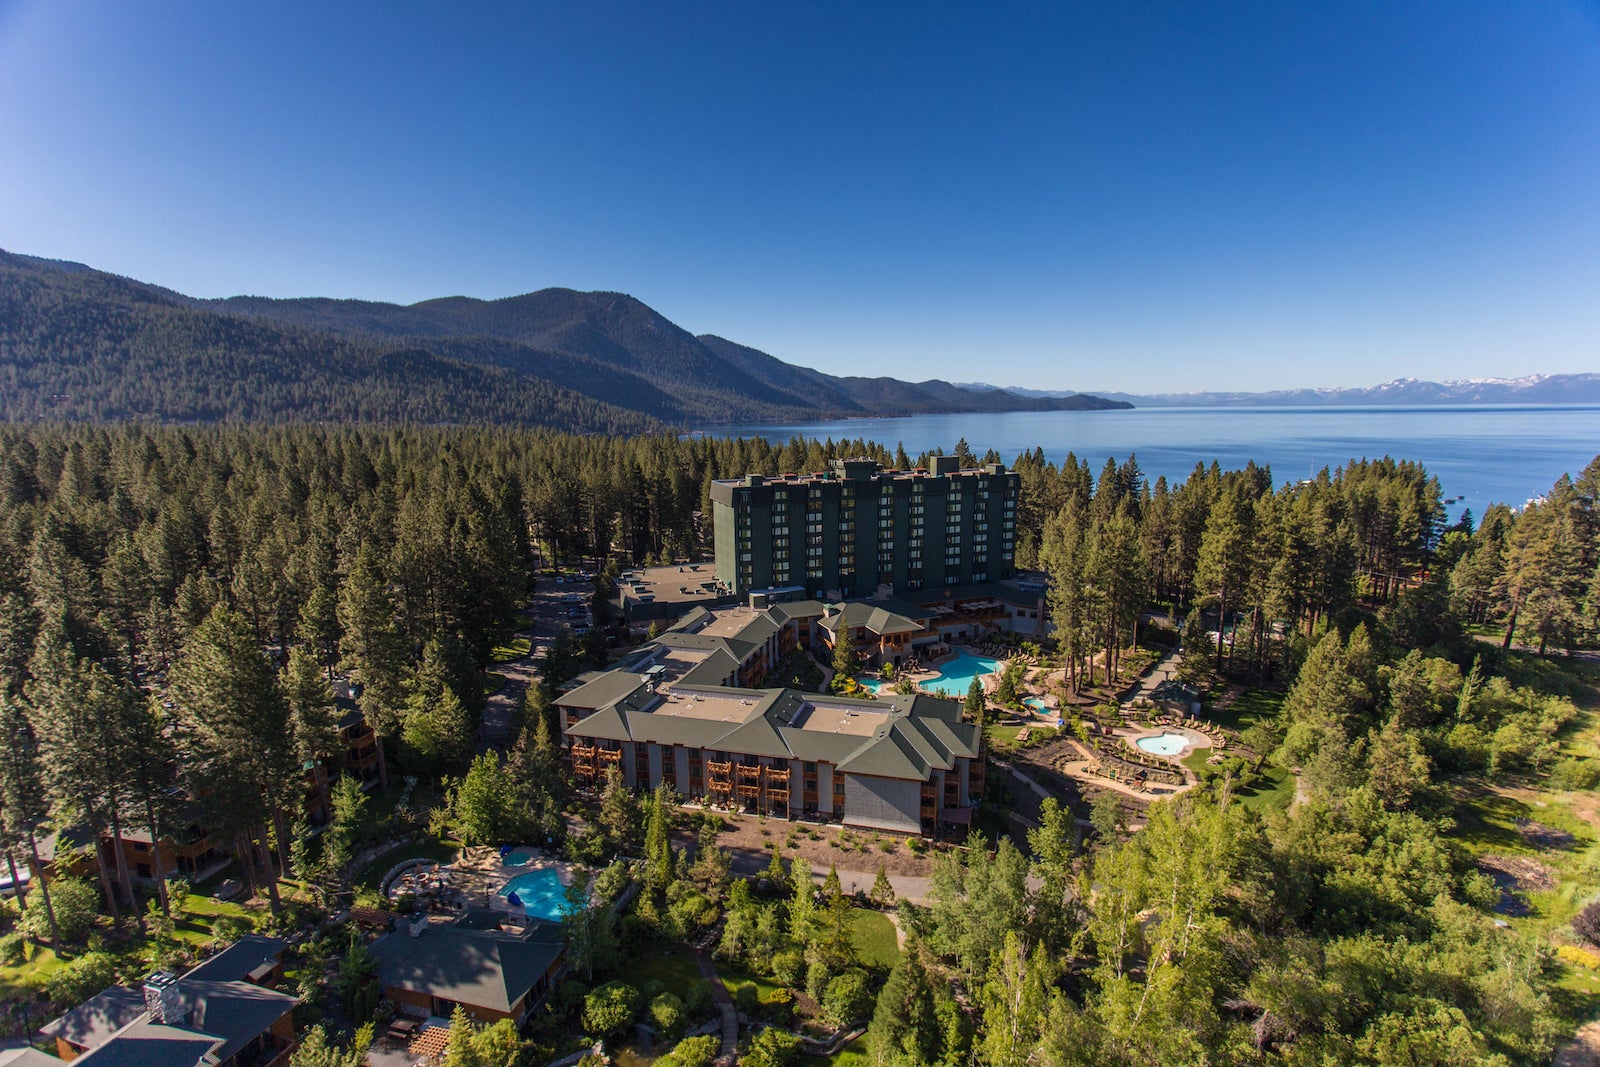 Arial view of Hyatt resort with Lake Tahoe in background